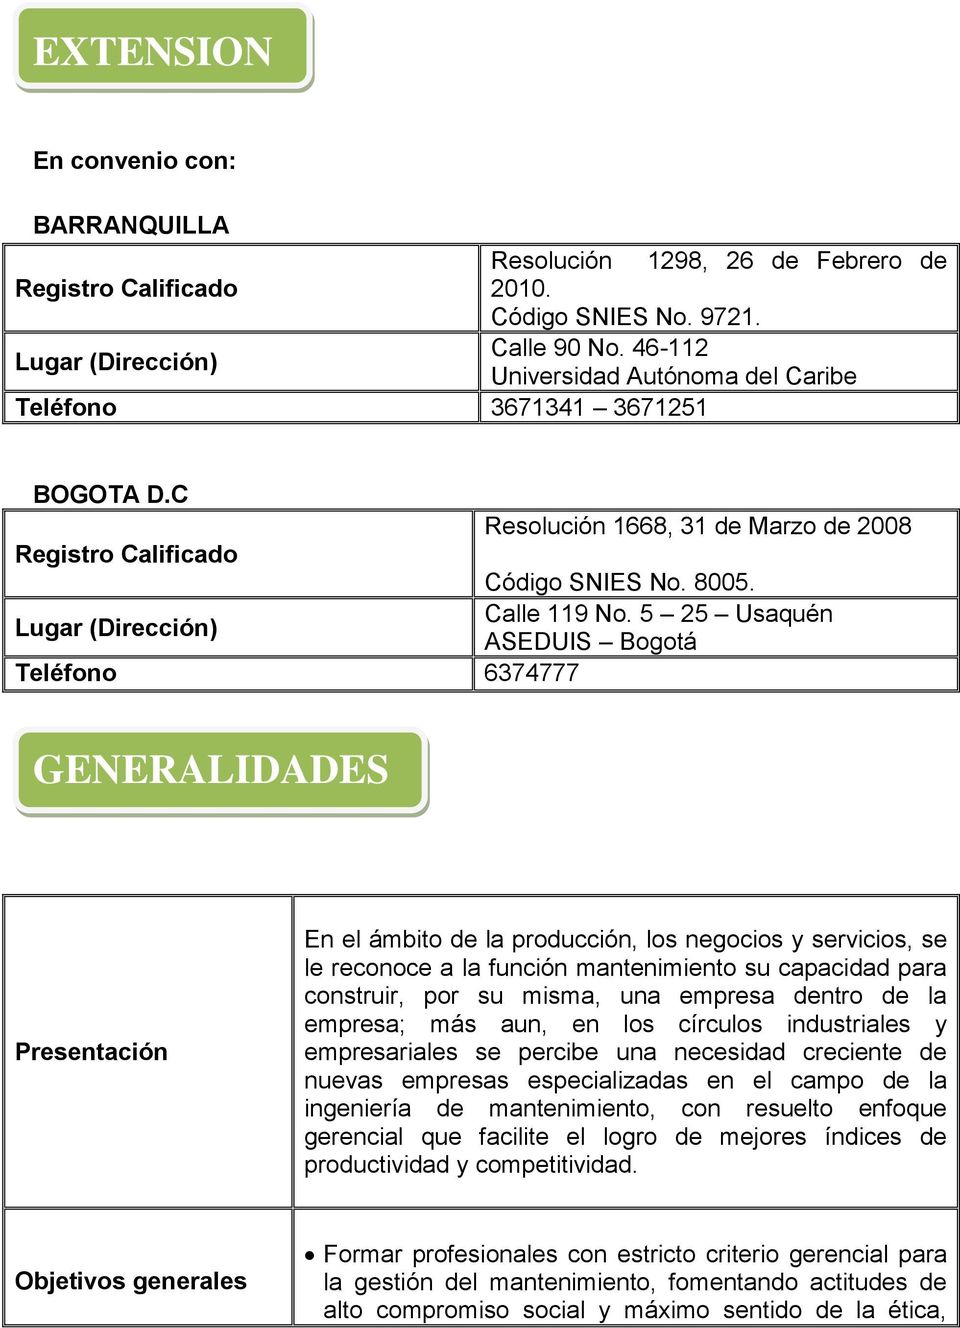 5 25 Usaquén Lugar (Dirección) ASEDUIS Bogotá Teléfono 6374777 GENERALIDADES Presentación En el ámbito de la producción, los negocios y servicios, se le reconoce a la función mantenimiento su